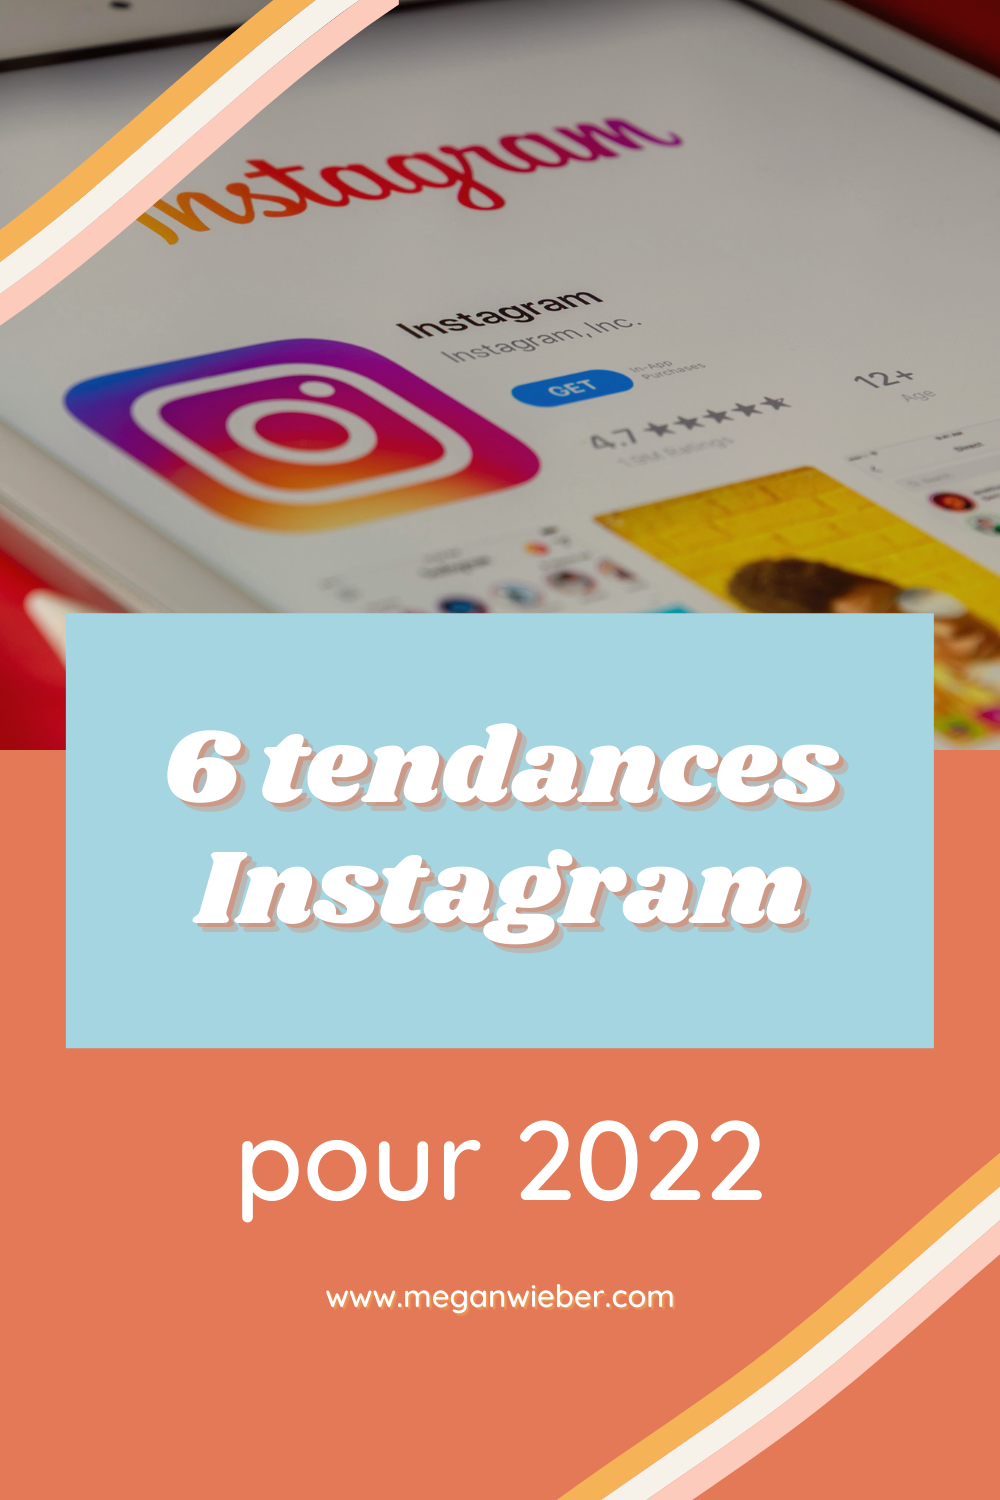 2-6-tendances-instagram-pour-2022-meganwieber-pinterest